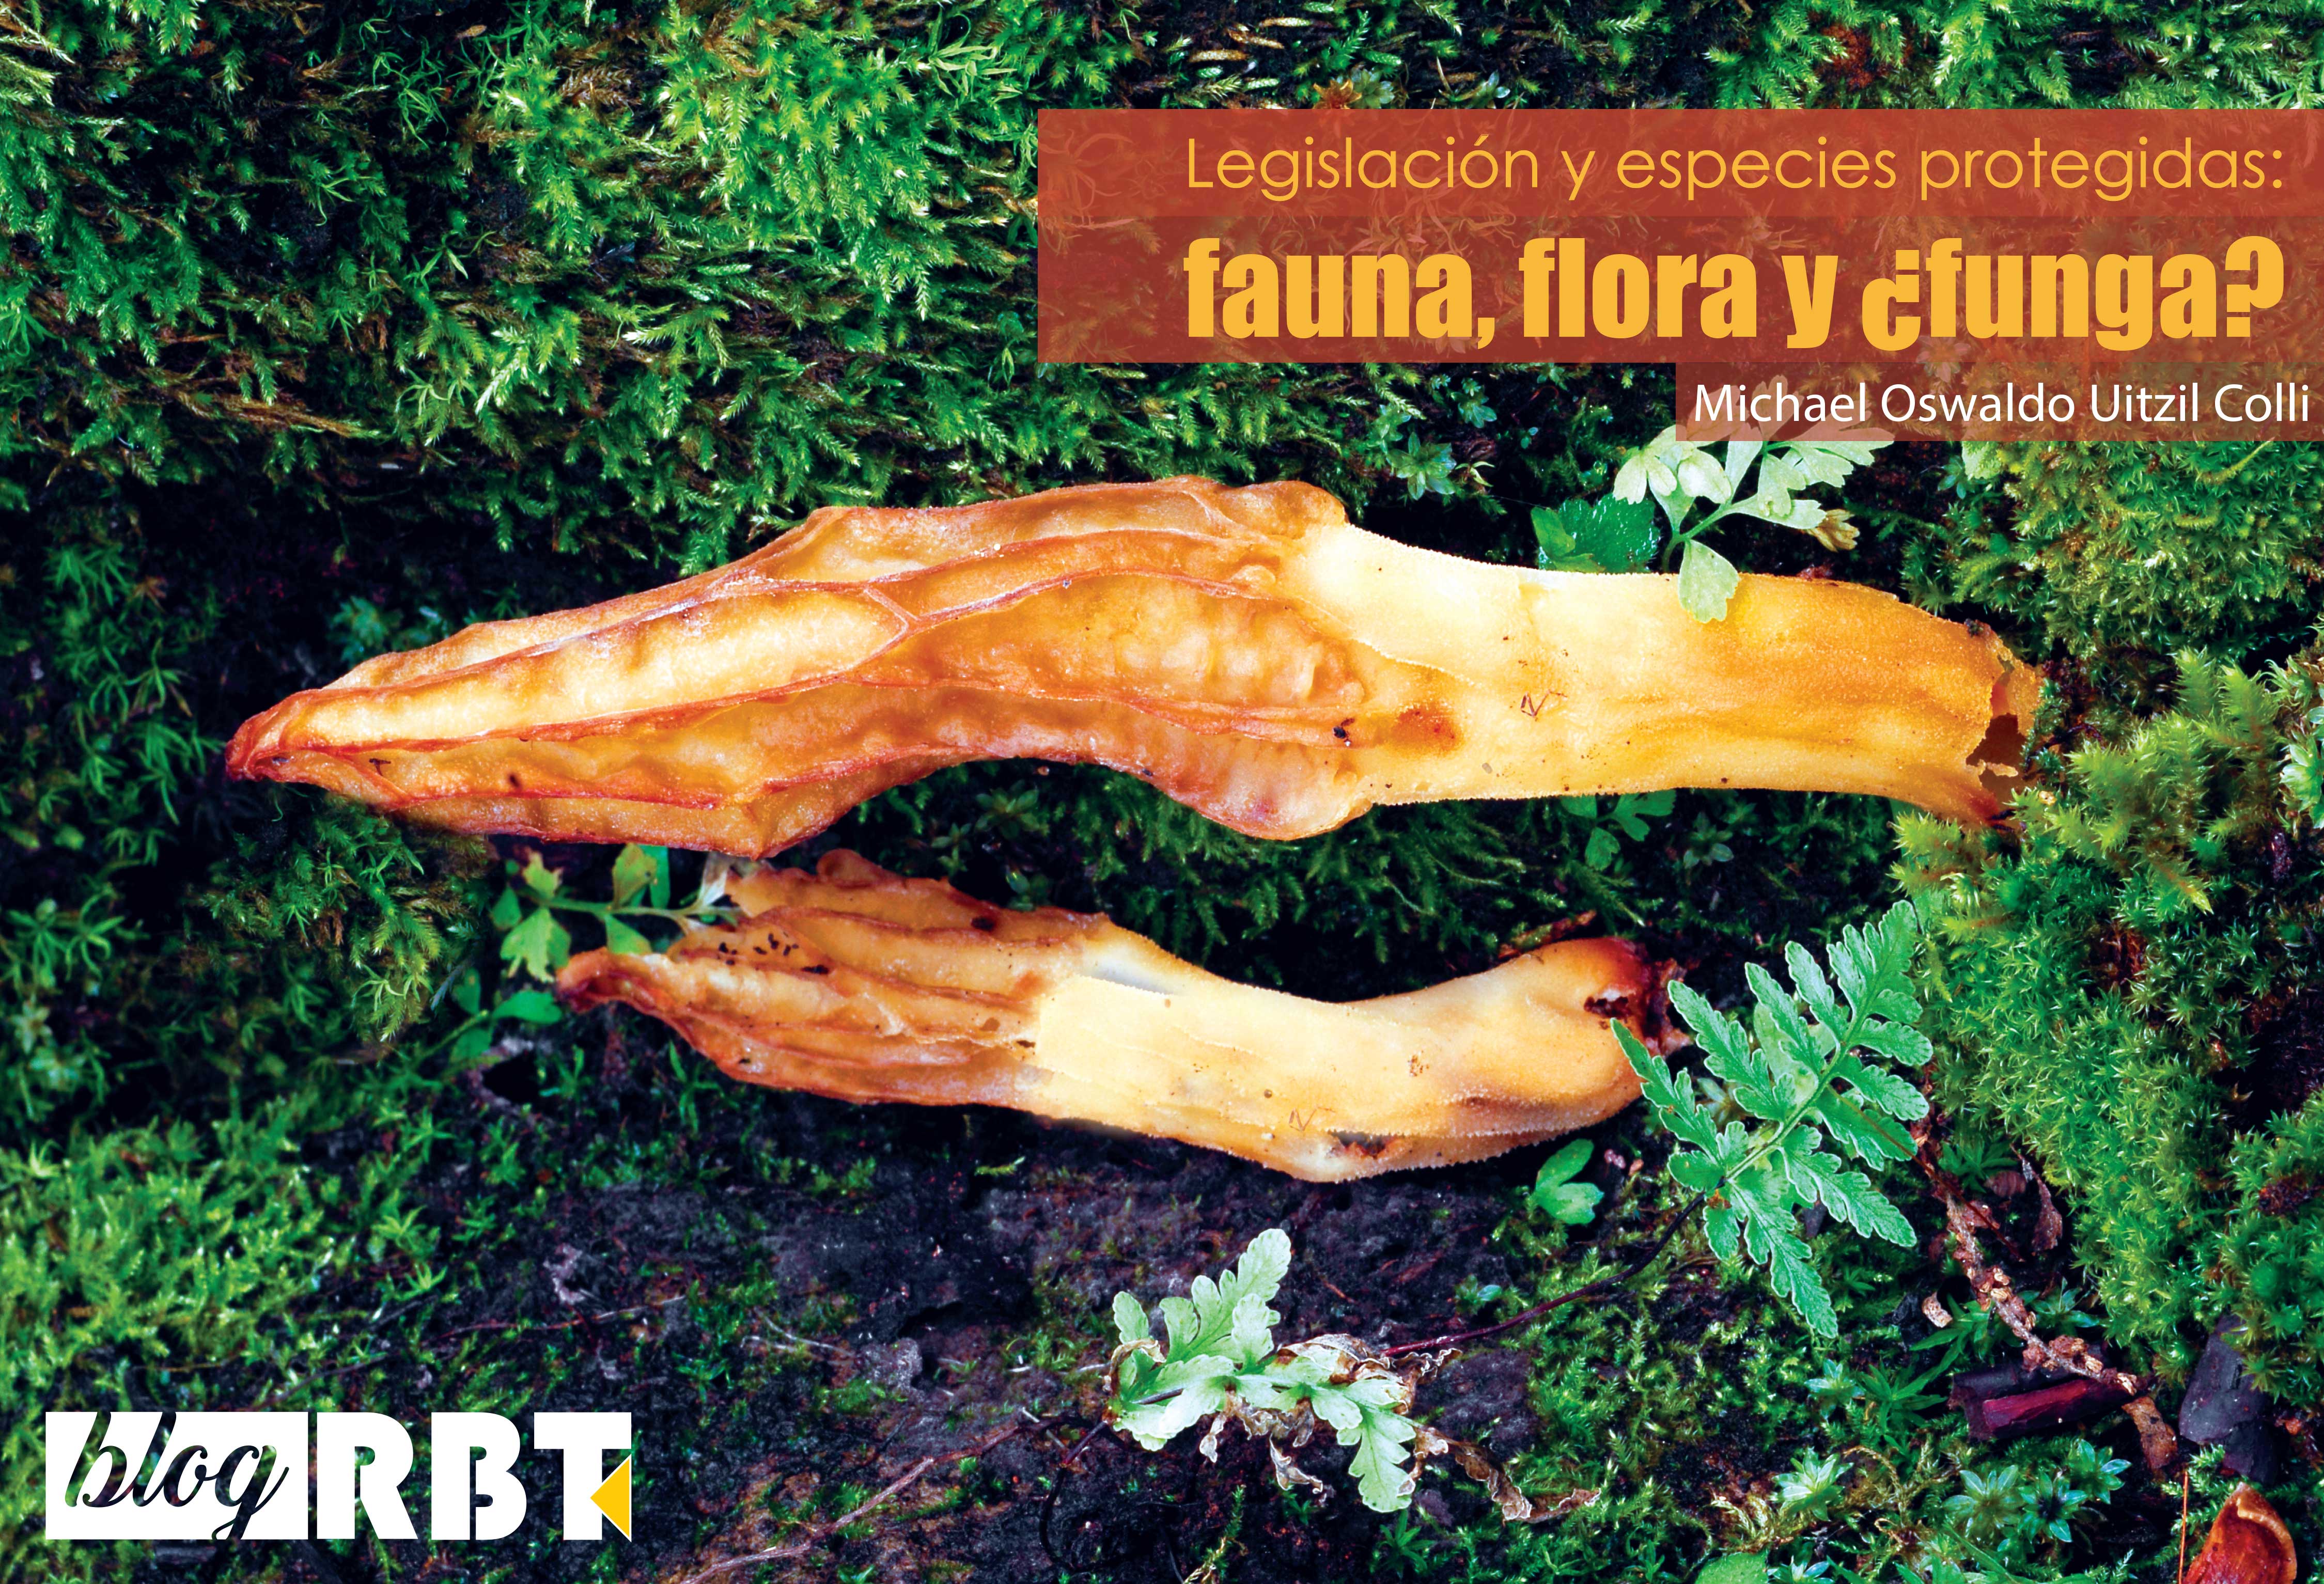 Ascoma de Morchella rufobrunnea (especie protegida por NOM-059-SEMARNAT-2010, México) sobre musgo. Fotografía de Laura Guzmán-Dávalos